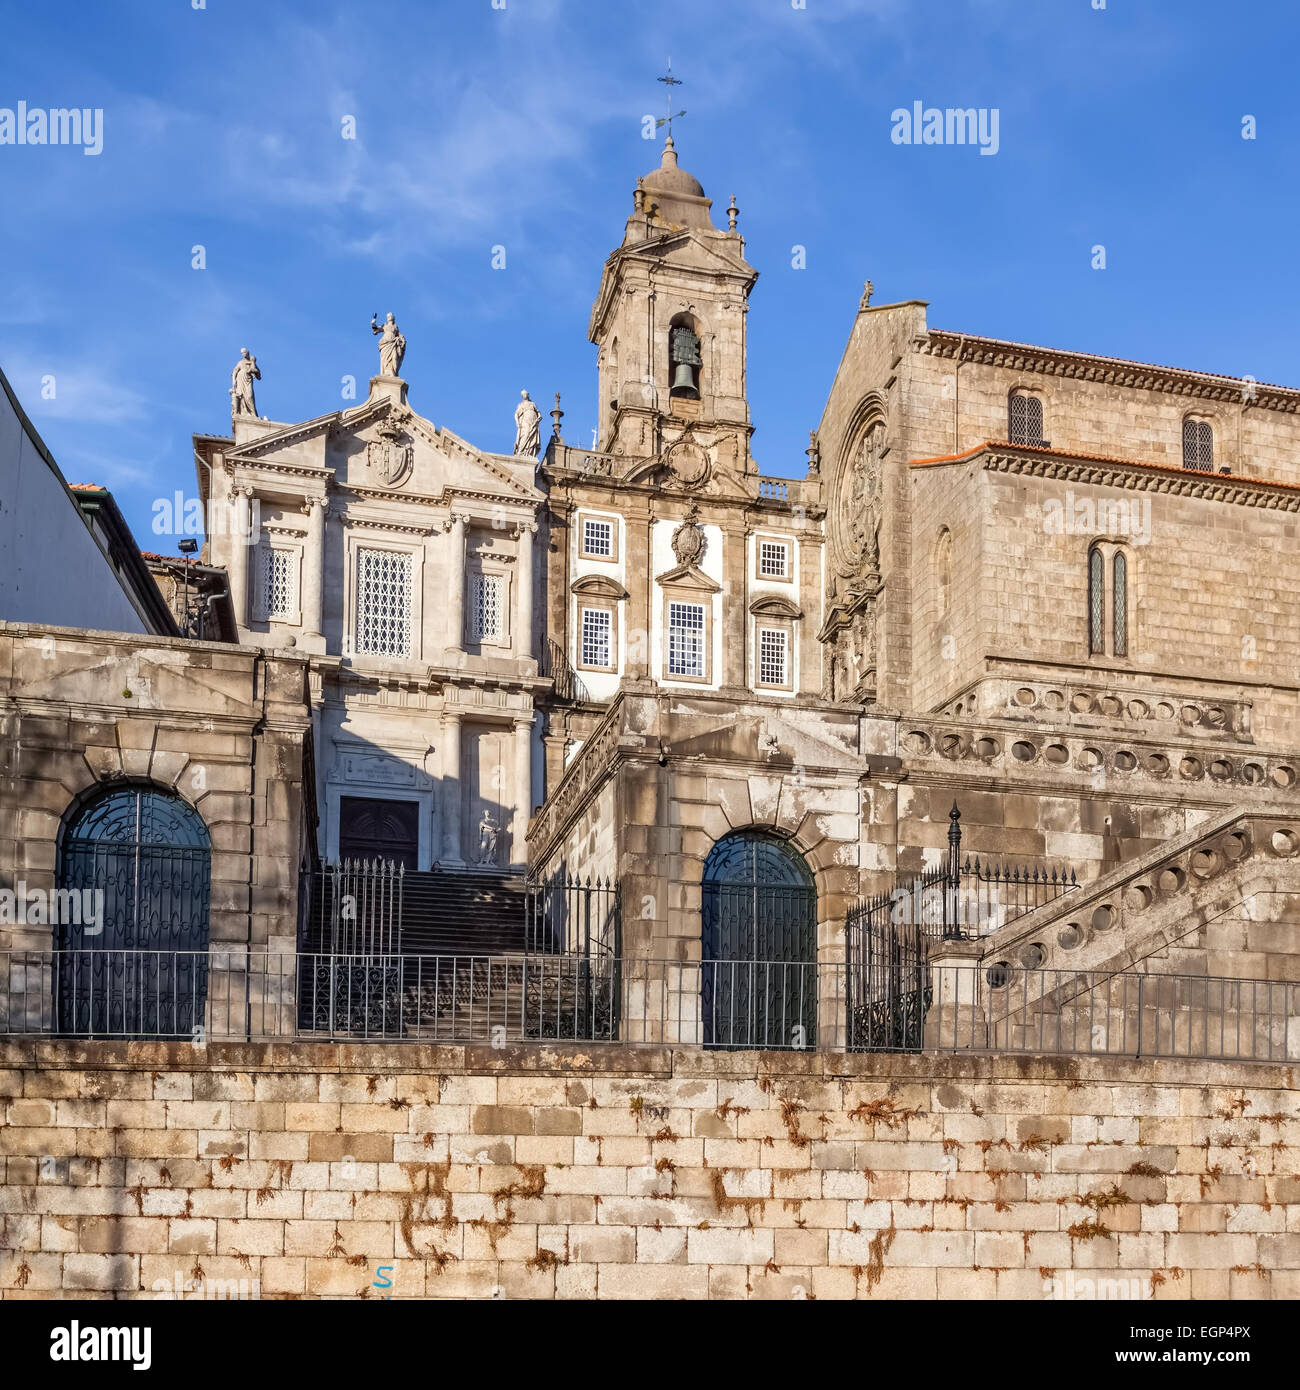 Porto, Portugal. L'église de São Francisco, la droite, le 14e siècle de style gothique. Terceiros de Sao Francisco Church, à gauche, dans un style néoclassique Banque D'Images